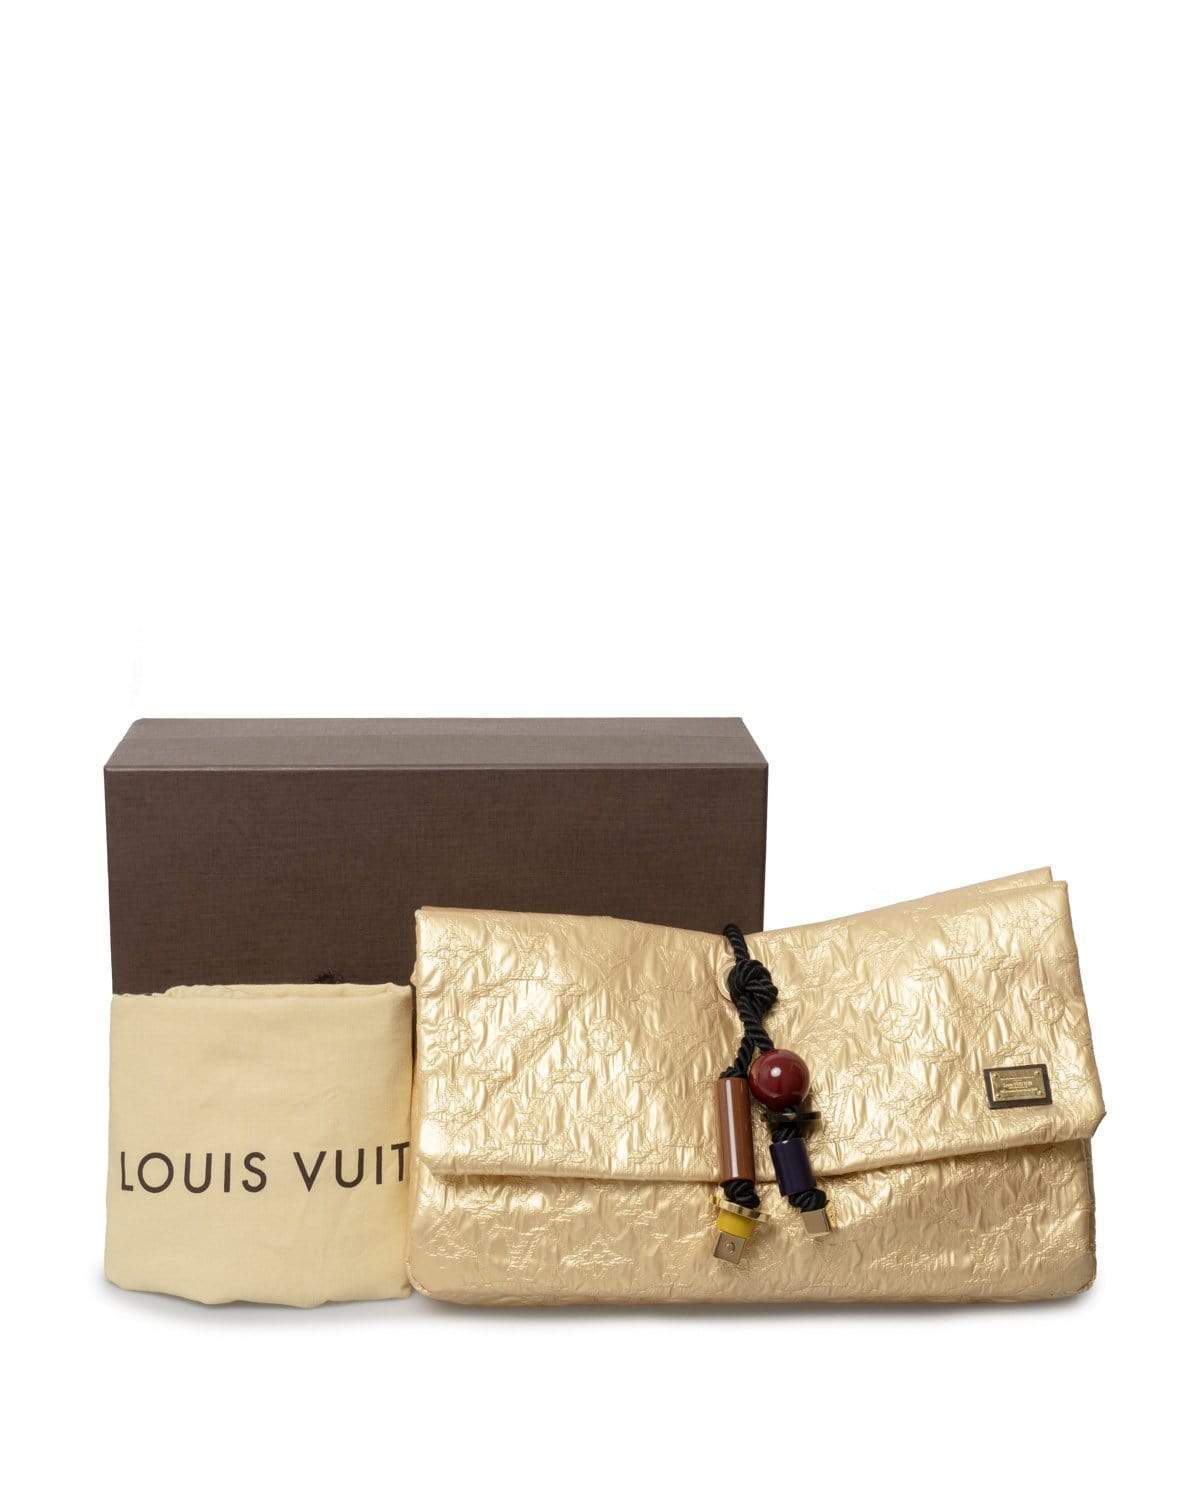 Louis Vuitton Louis Vuitton limited edition soft clutch - ASL1886